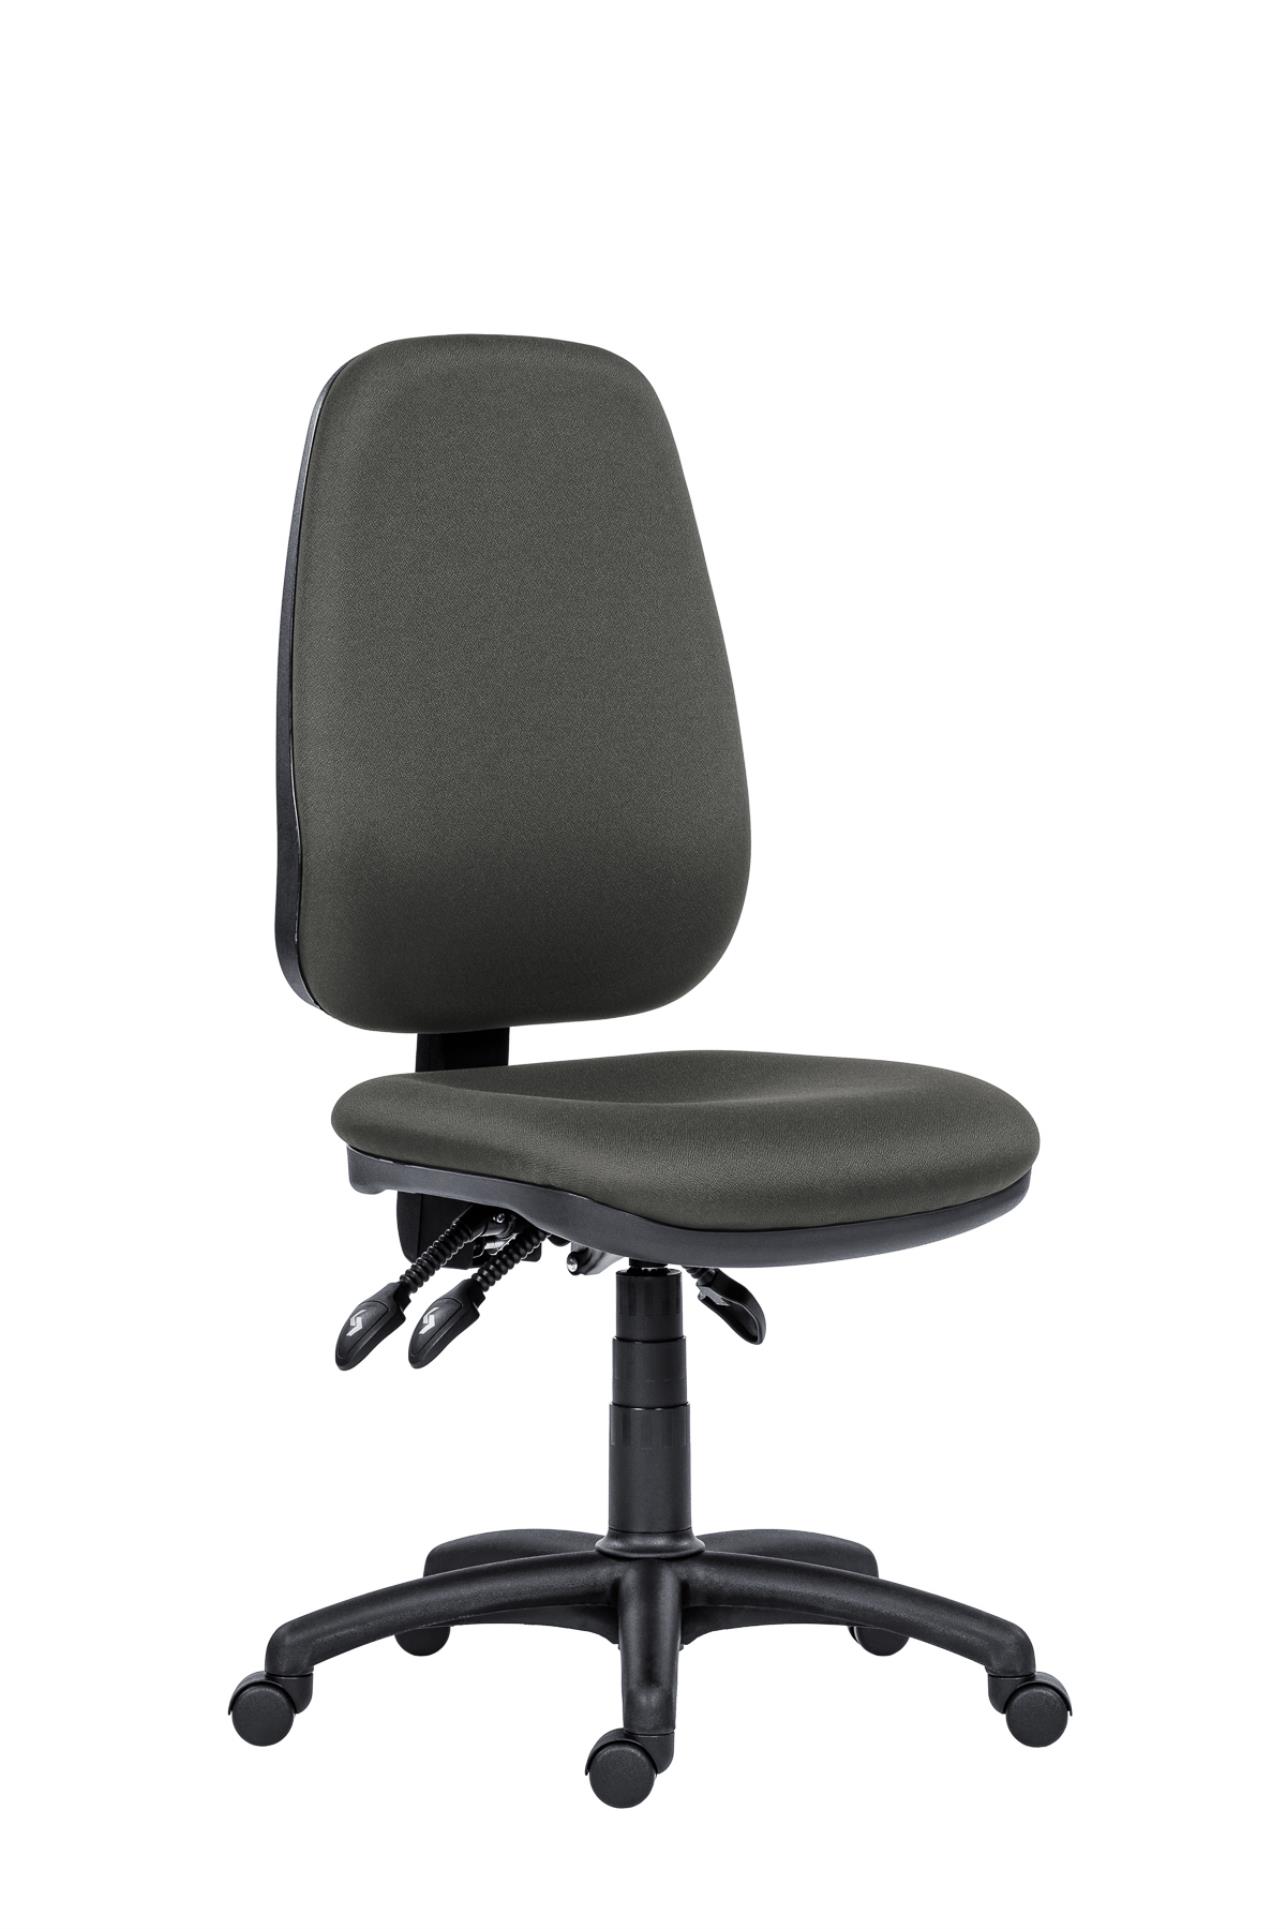 Antares Kancelářská židle 1540 Asyn - bez područek, šedá